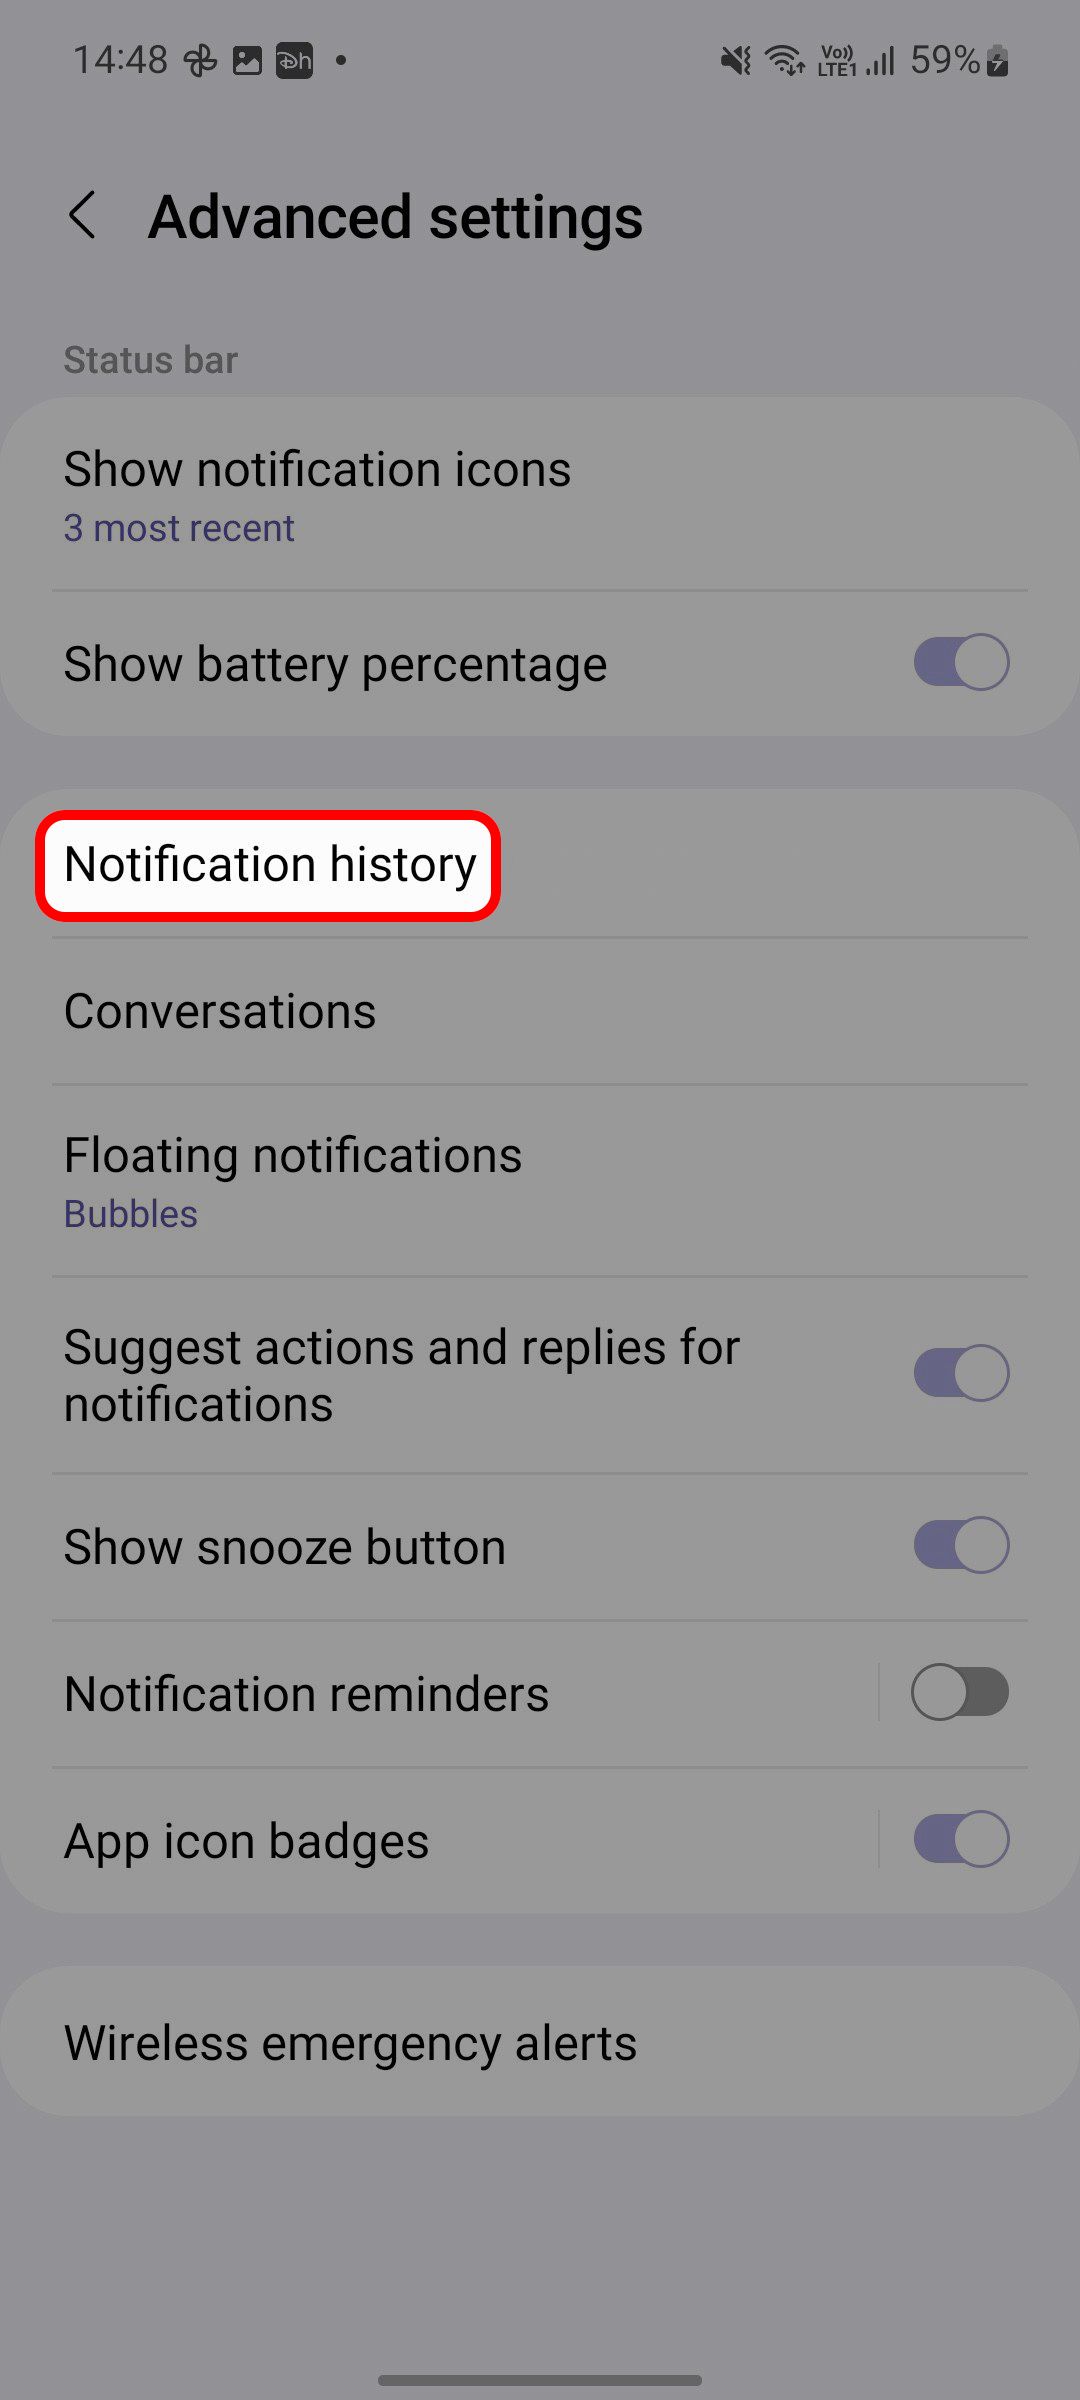 Menu de configurações avançadas do Samsung One UI Notifications destacando a opção Histórico de notificações